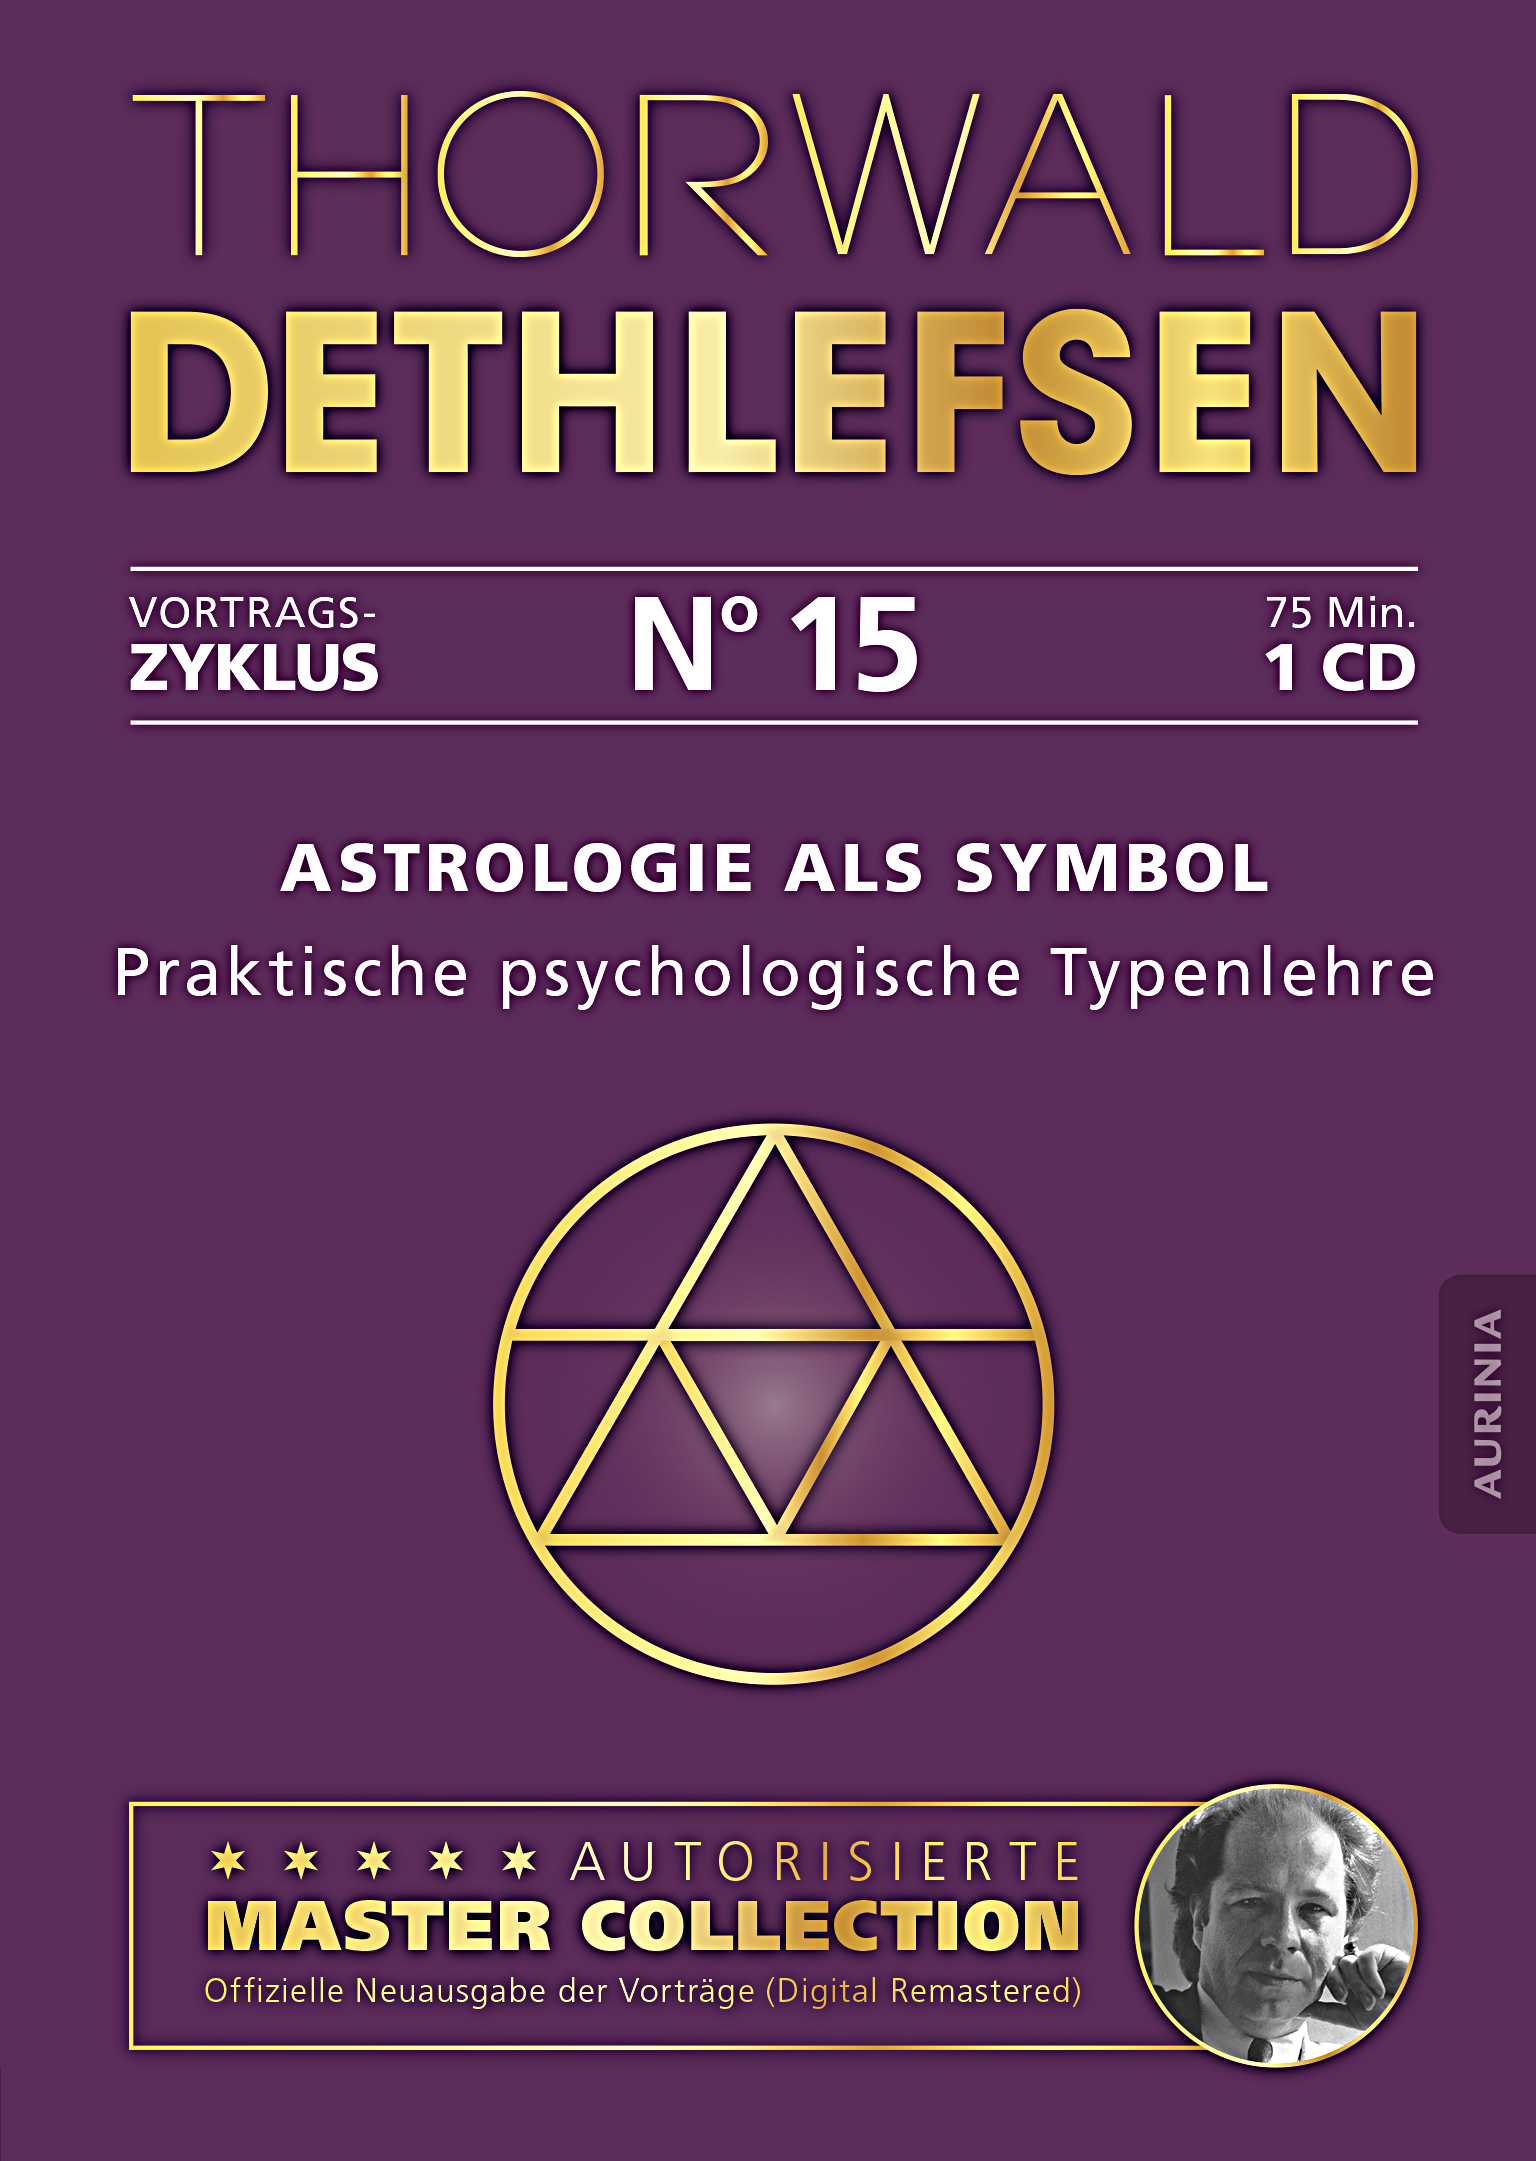 Vortrag 15: Astrologie als Symbol - Praktische psychologische Typenlehre